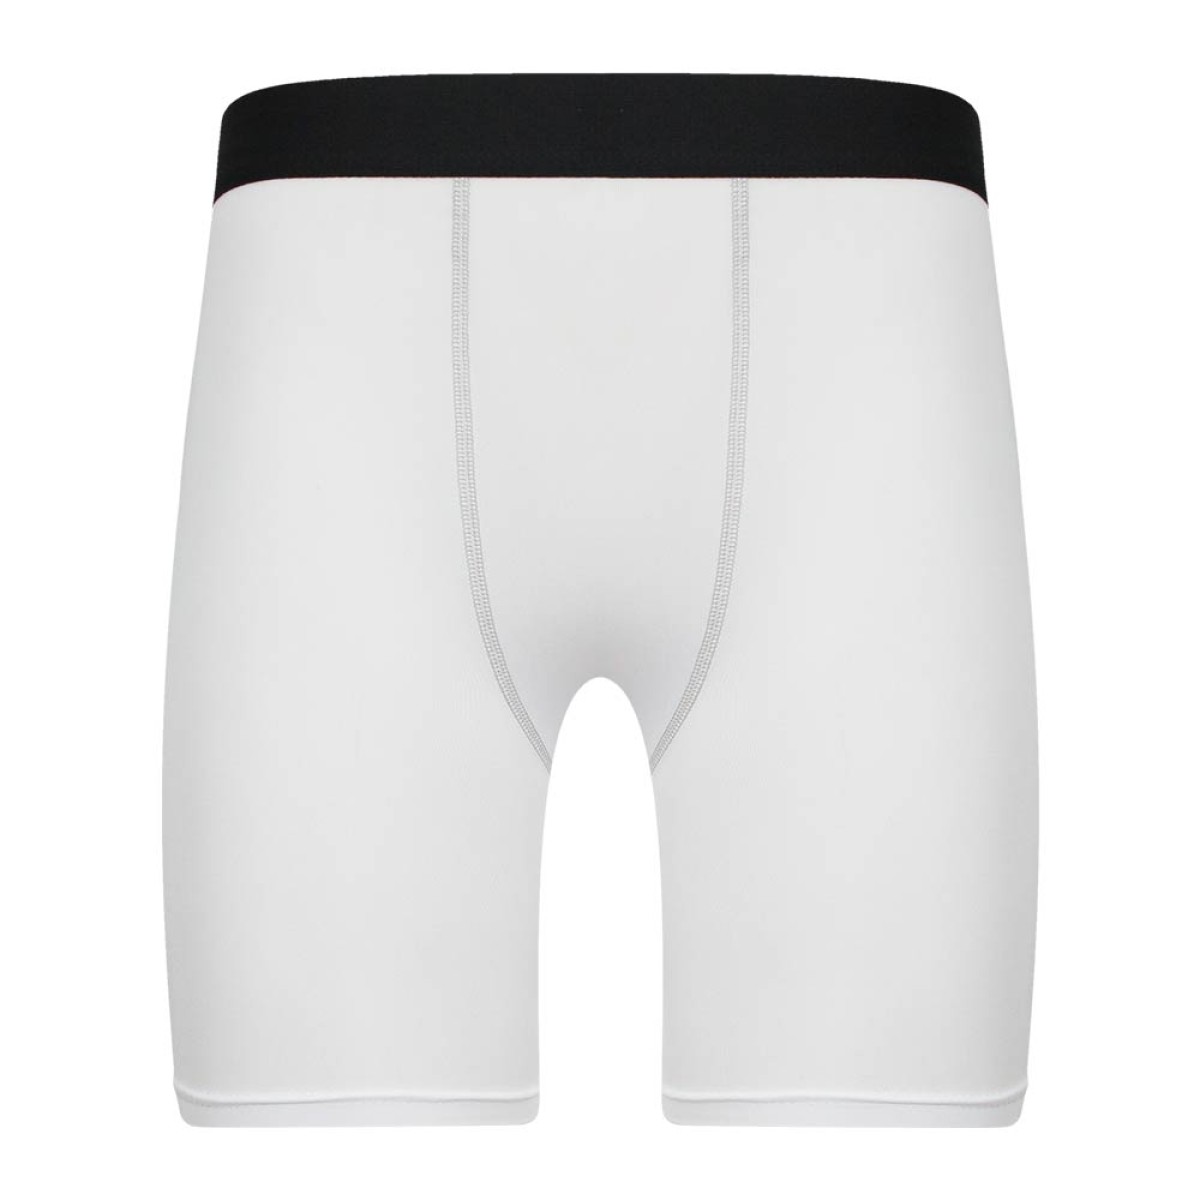 under-shorts-kus15169